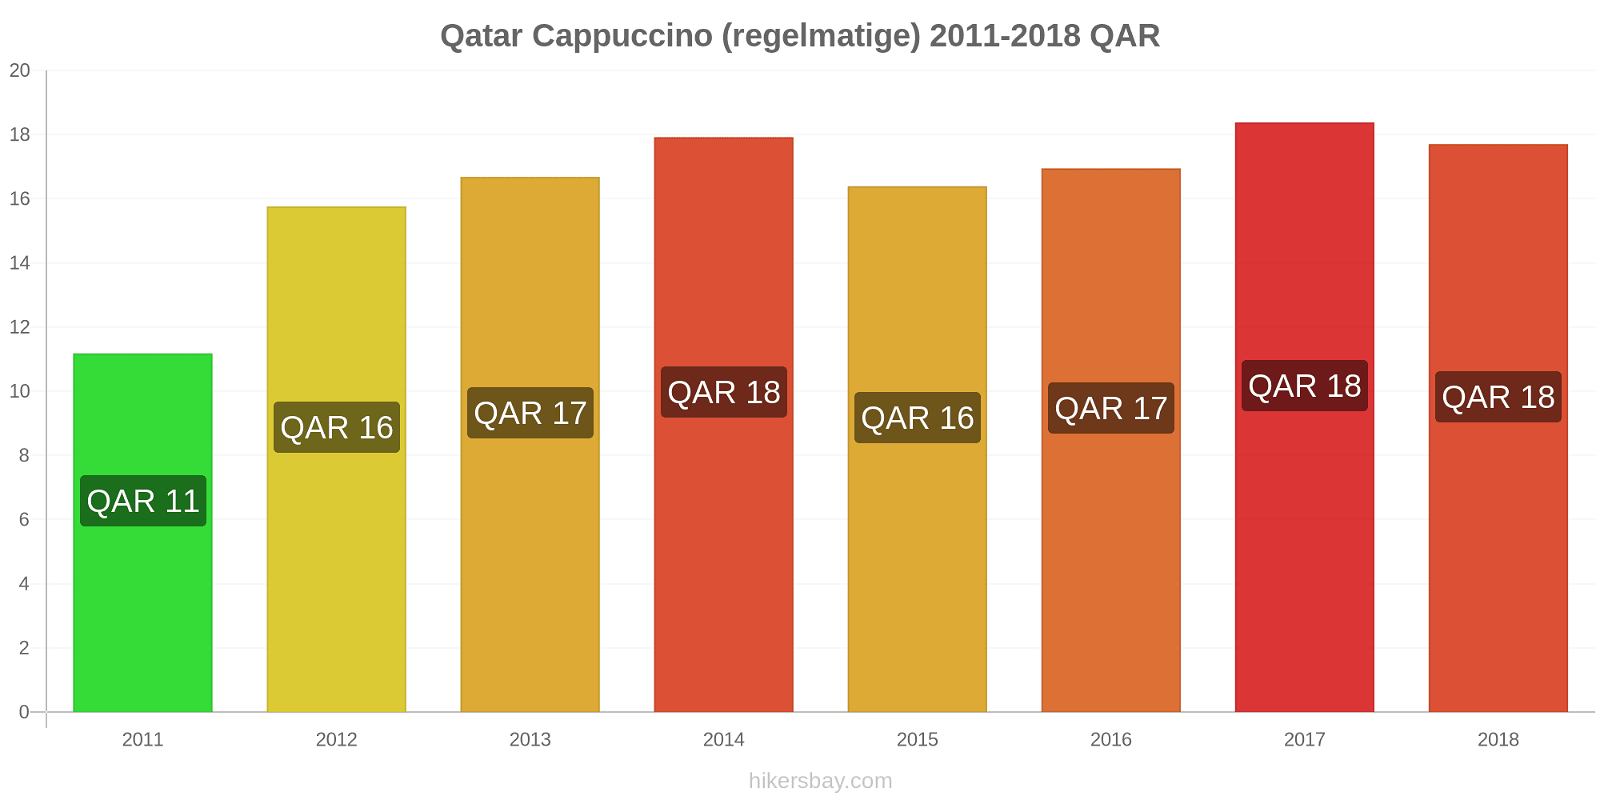 Qatar prijswijzigingen Cappuccino hikersbay.com